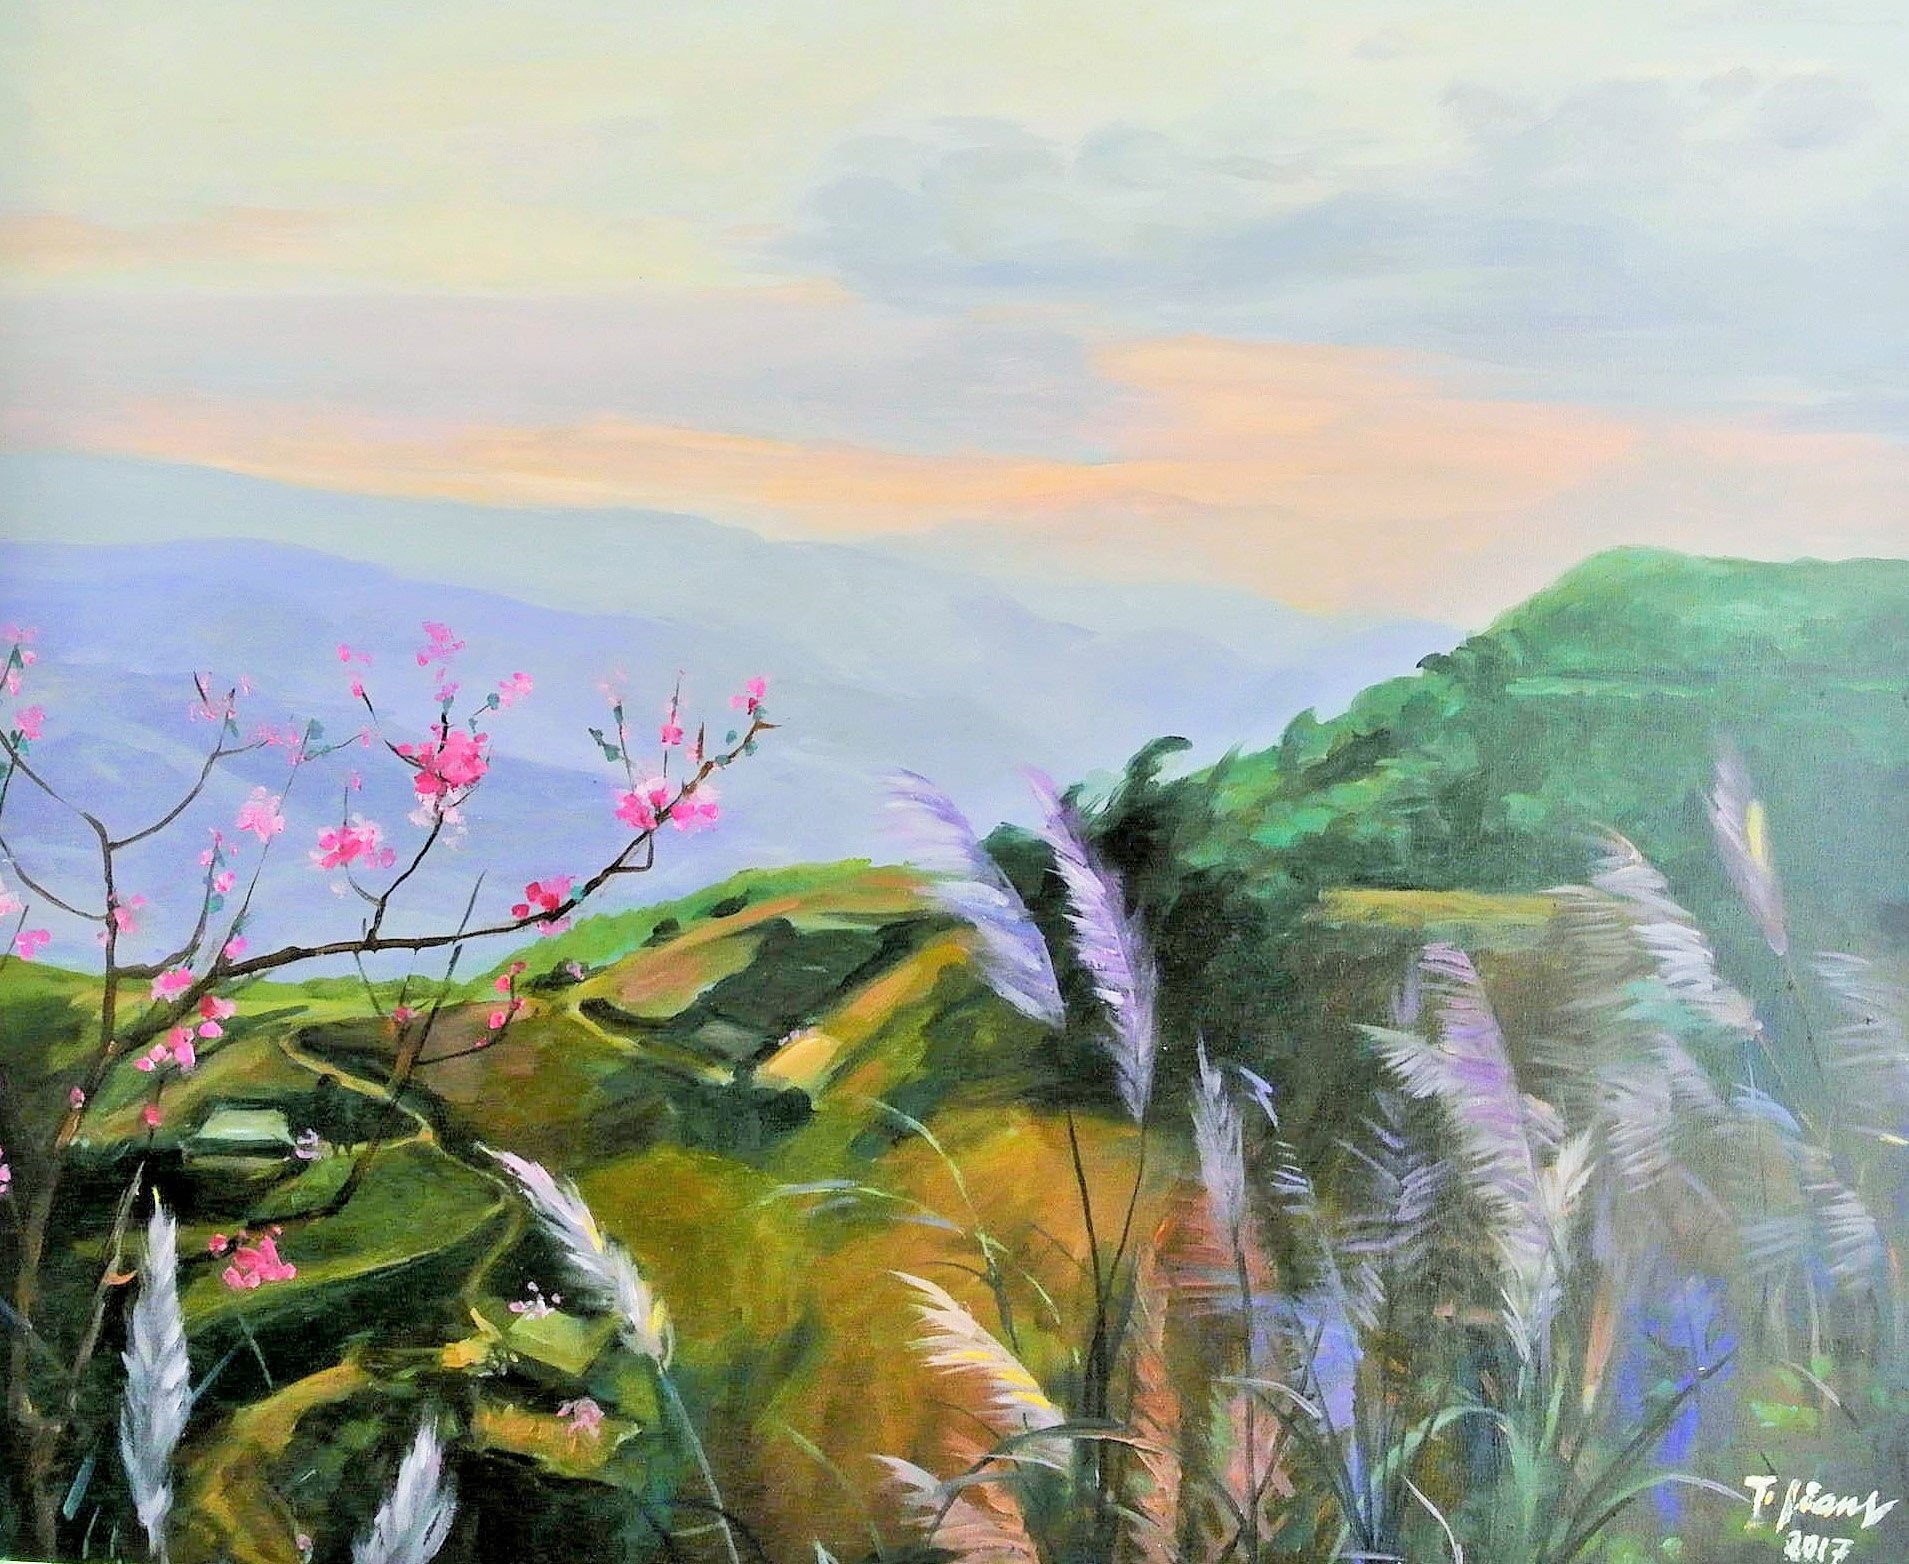 Tìm về Đồng lúa Bảy Núi An Giang bức tranh phong cảnh bình yên